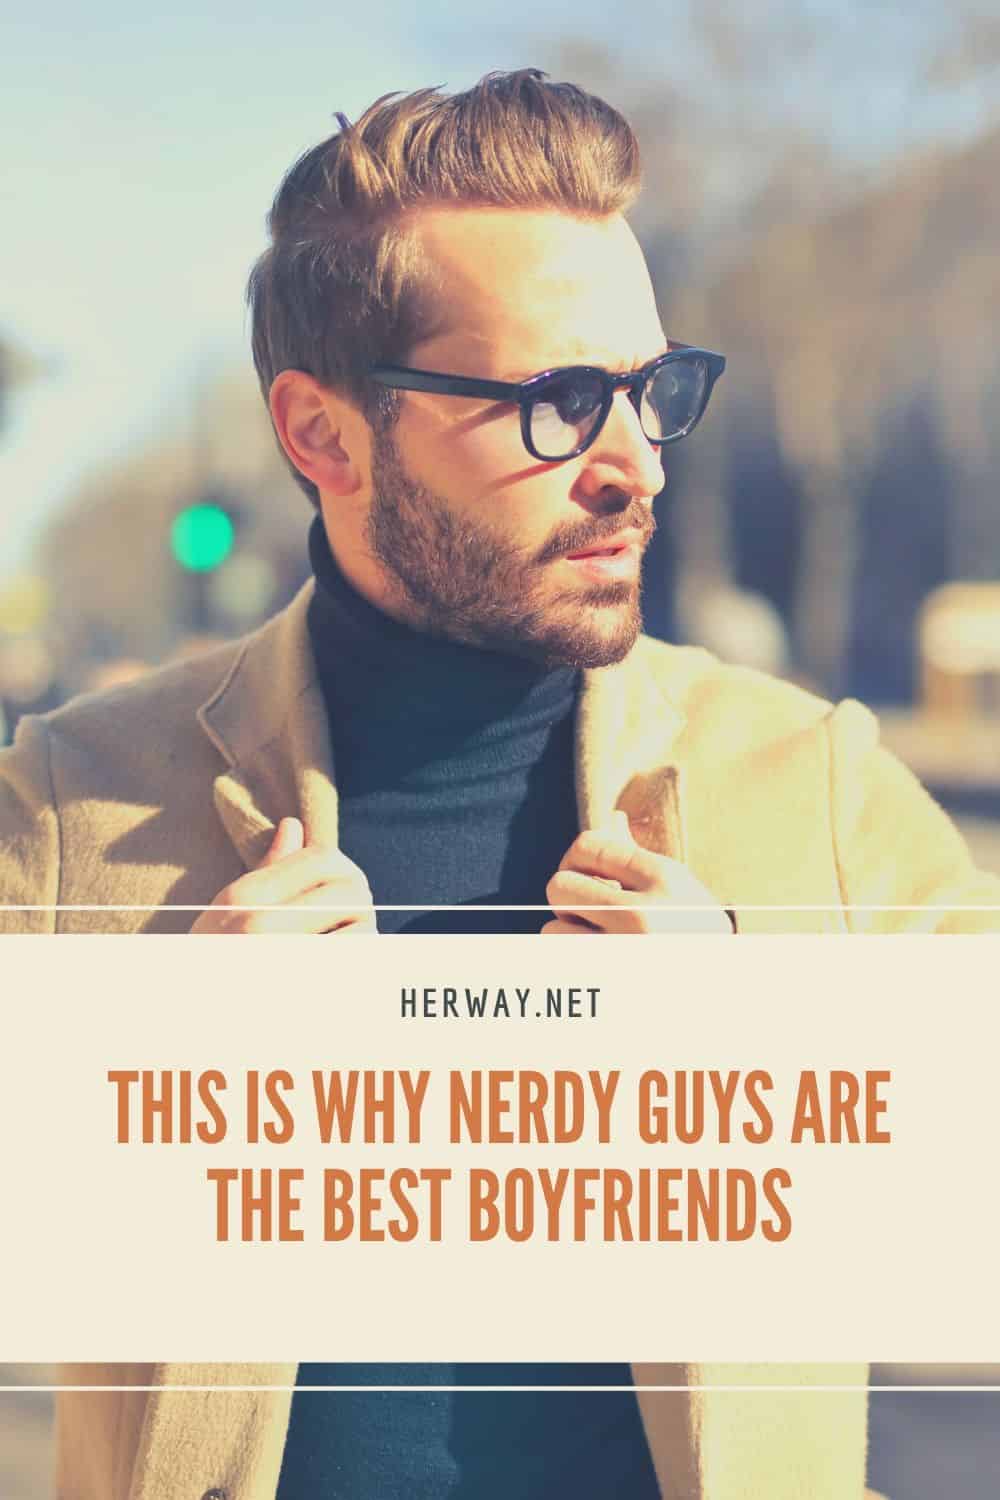 Ecco perché i ragazzi nerd sono i migliori fidanzati